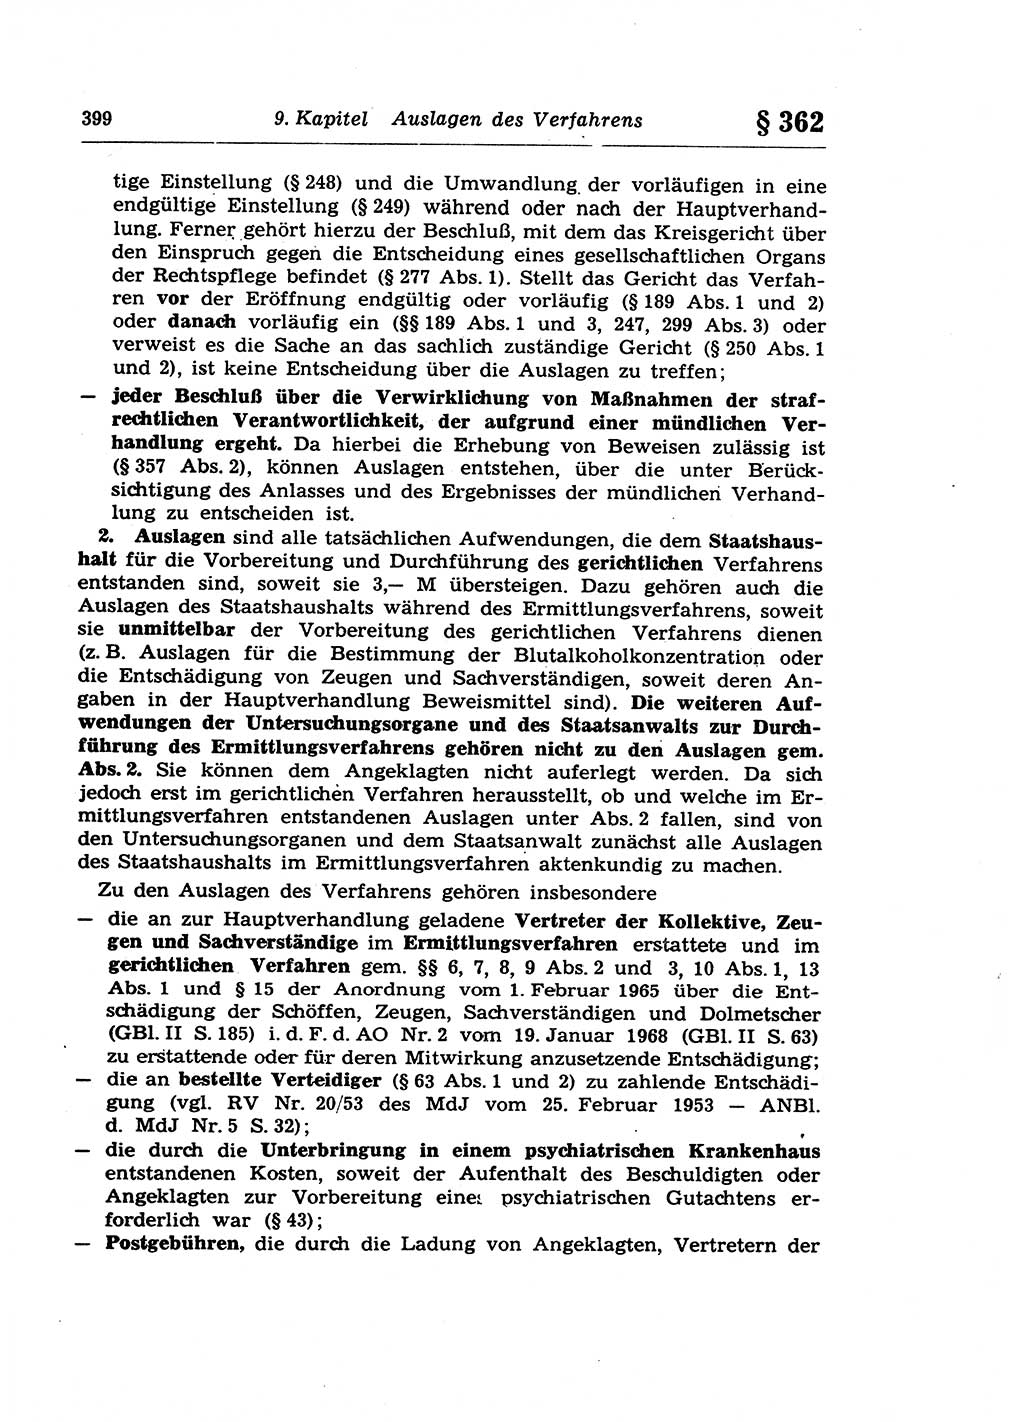 Strafprozeßrecht der DDR (Deutsche Demokratische Republik), Lehrkommentar zur Strafprozeßordnung (StPO) 1968, Seite 399 (Strafprozeßr. DDR Lehrkomm. StPO 19688, S. 399)